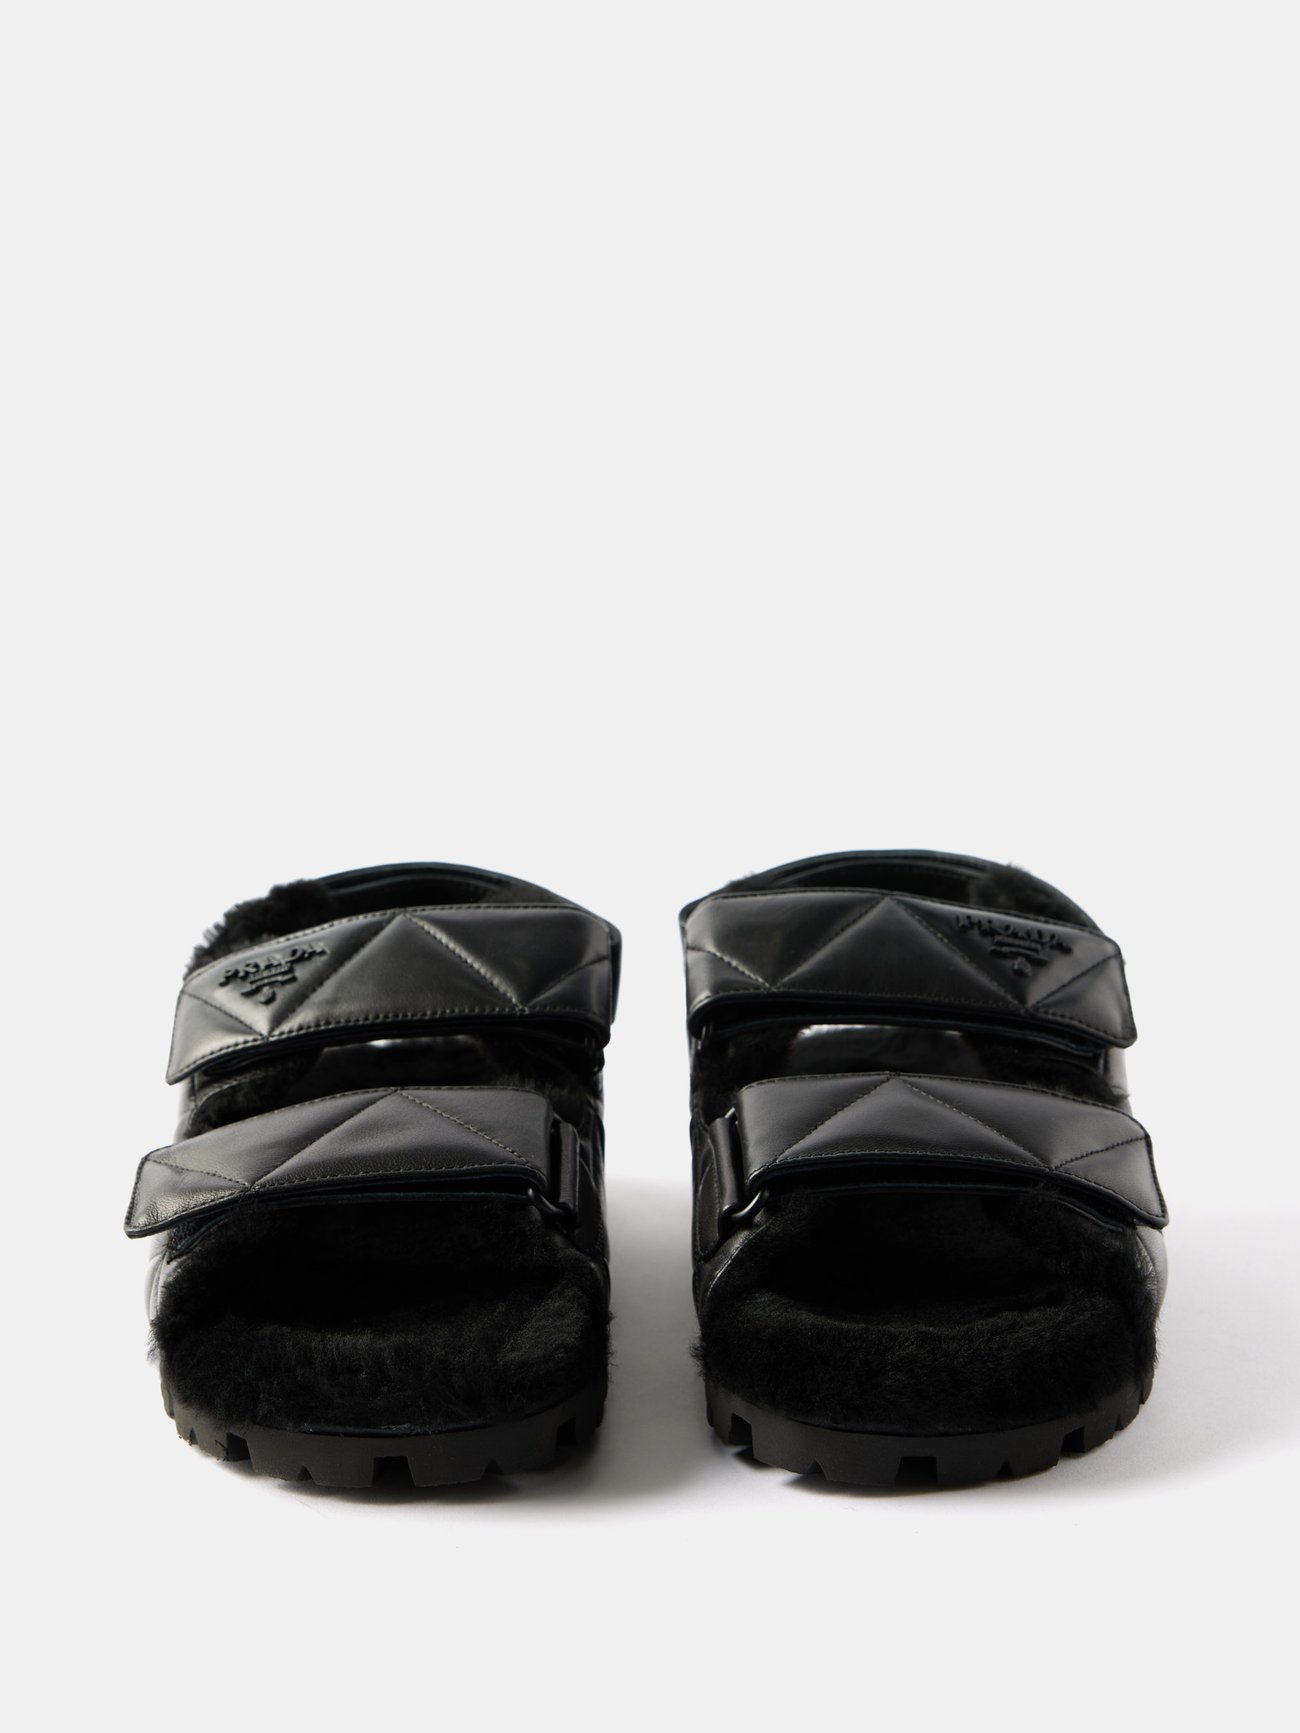 Louis Vuitton Men Criss Cross Leather Slide Flats SIZE 7UK (7.5US)